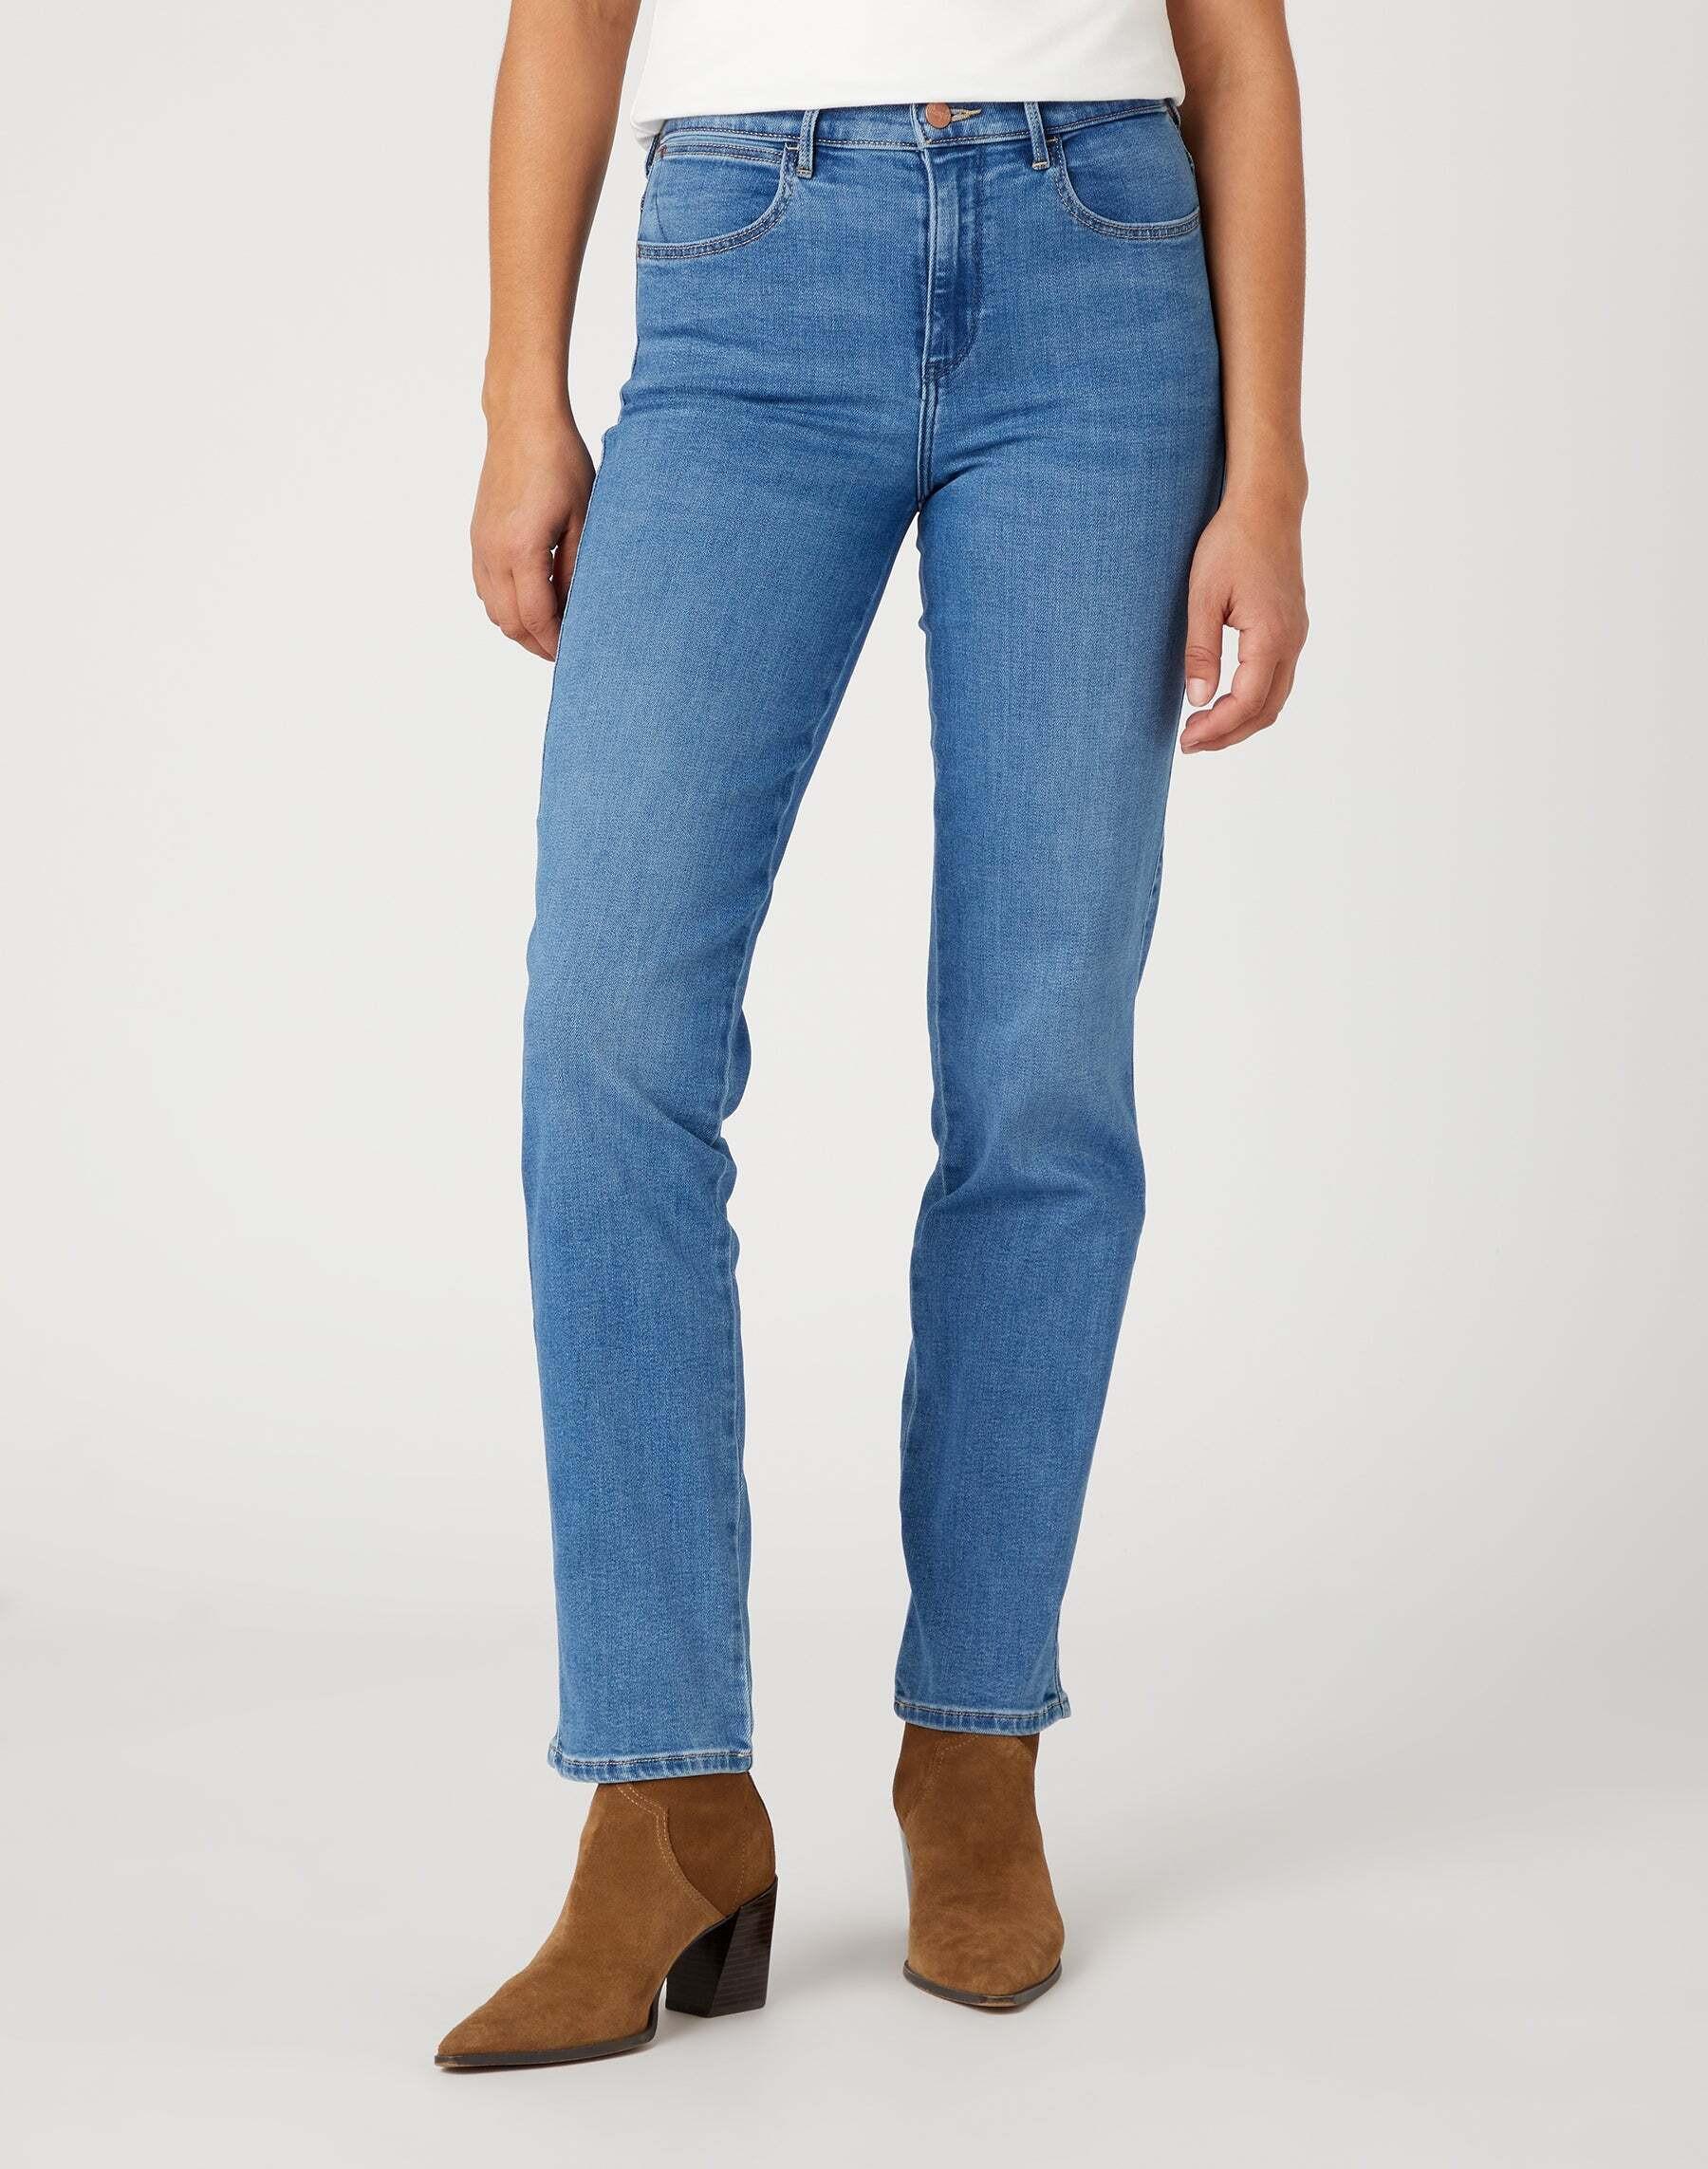 Jeans Straight Damen Hellblau L30/W32 von Wrangler